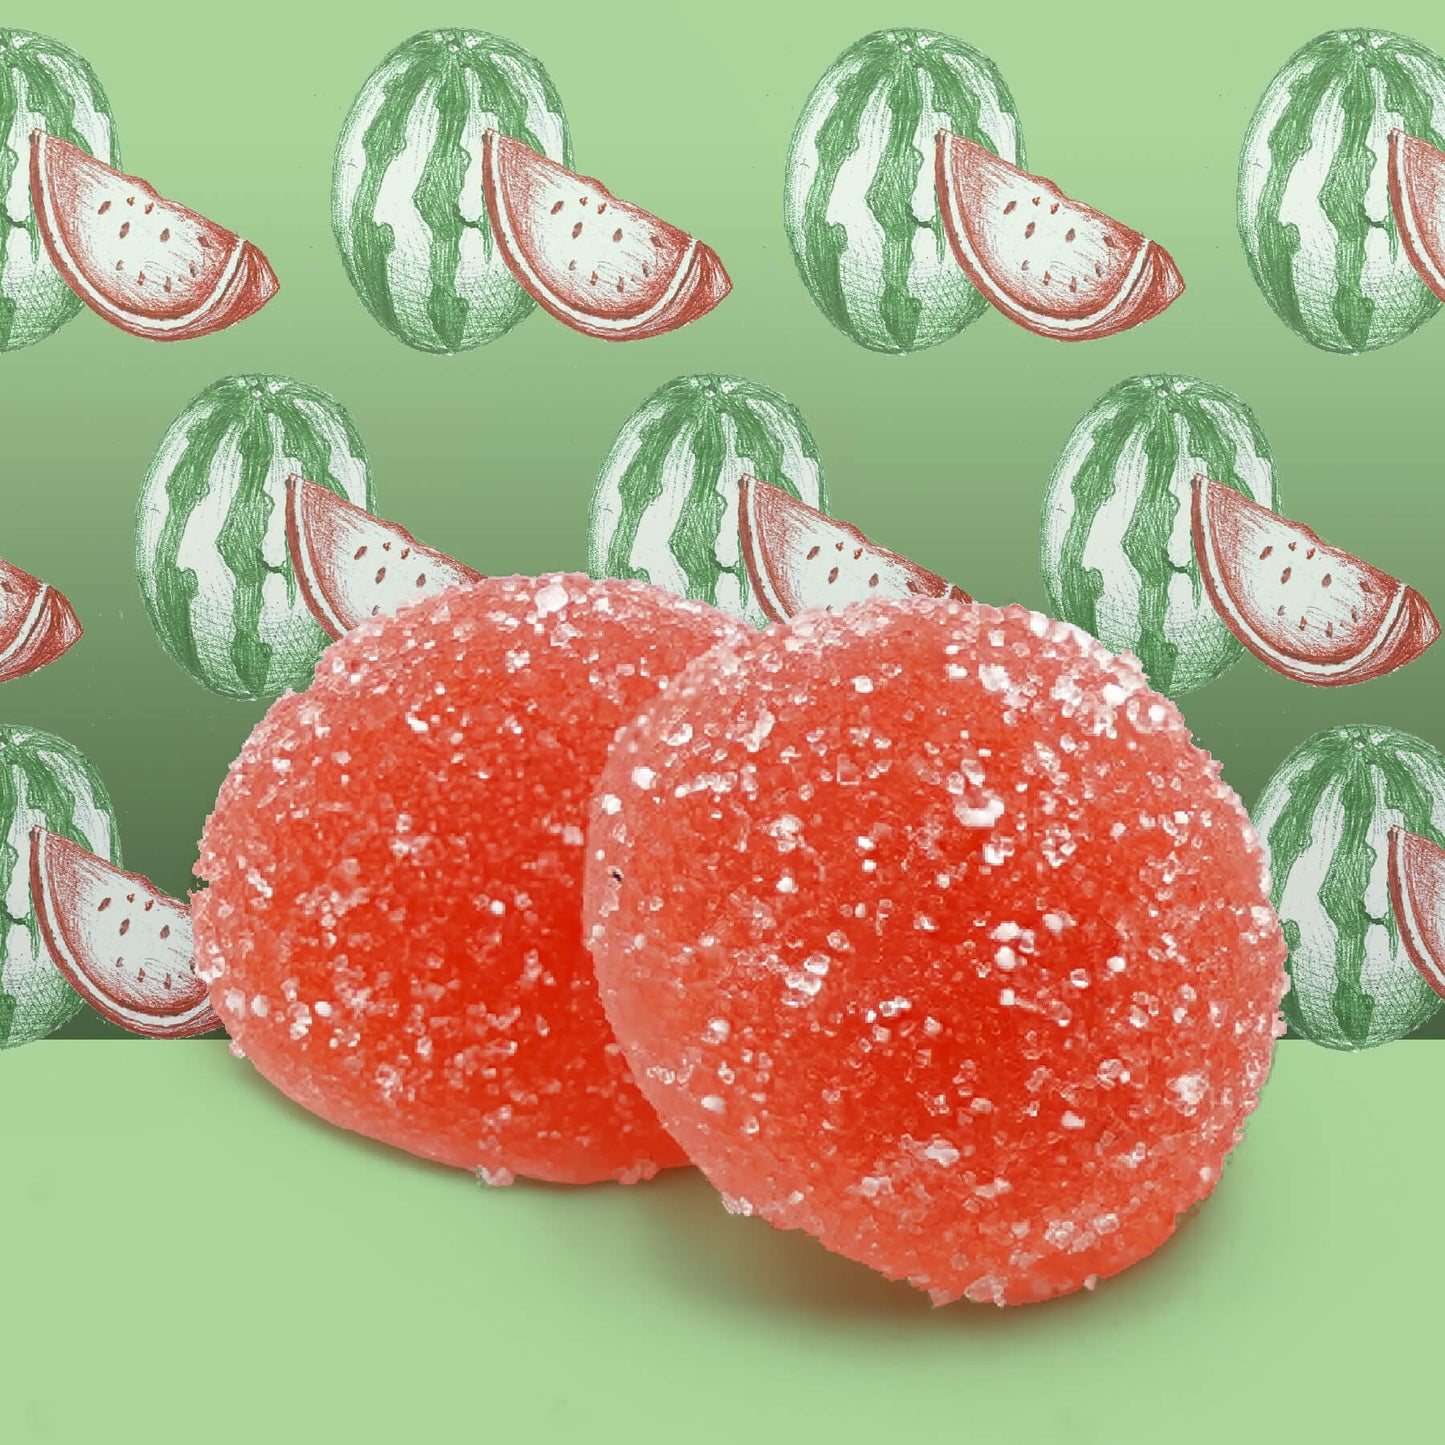 CBD & THC Bonbons - Wassermelonengeschmack